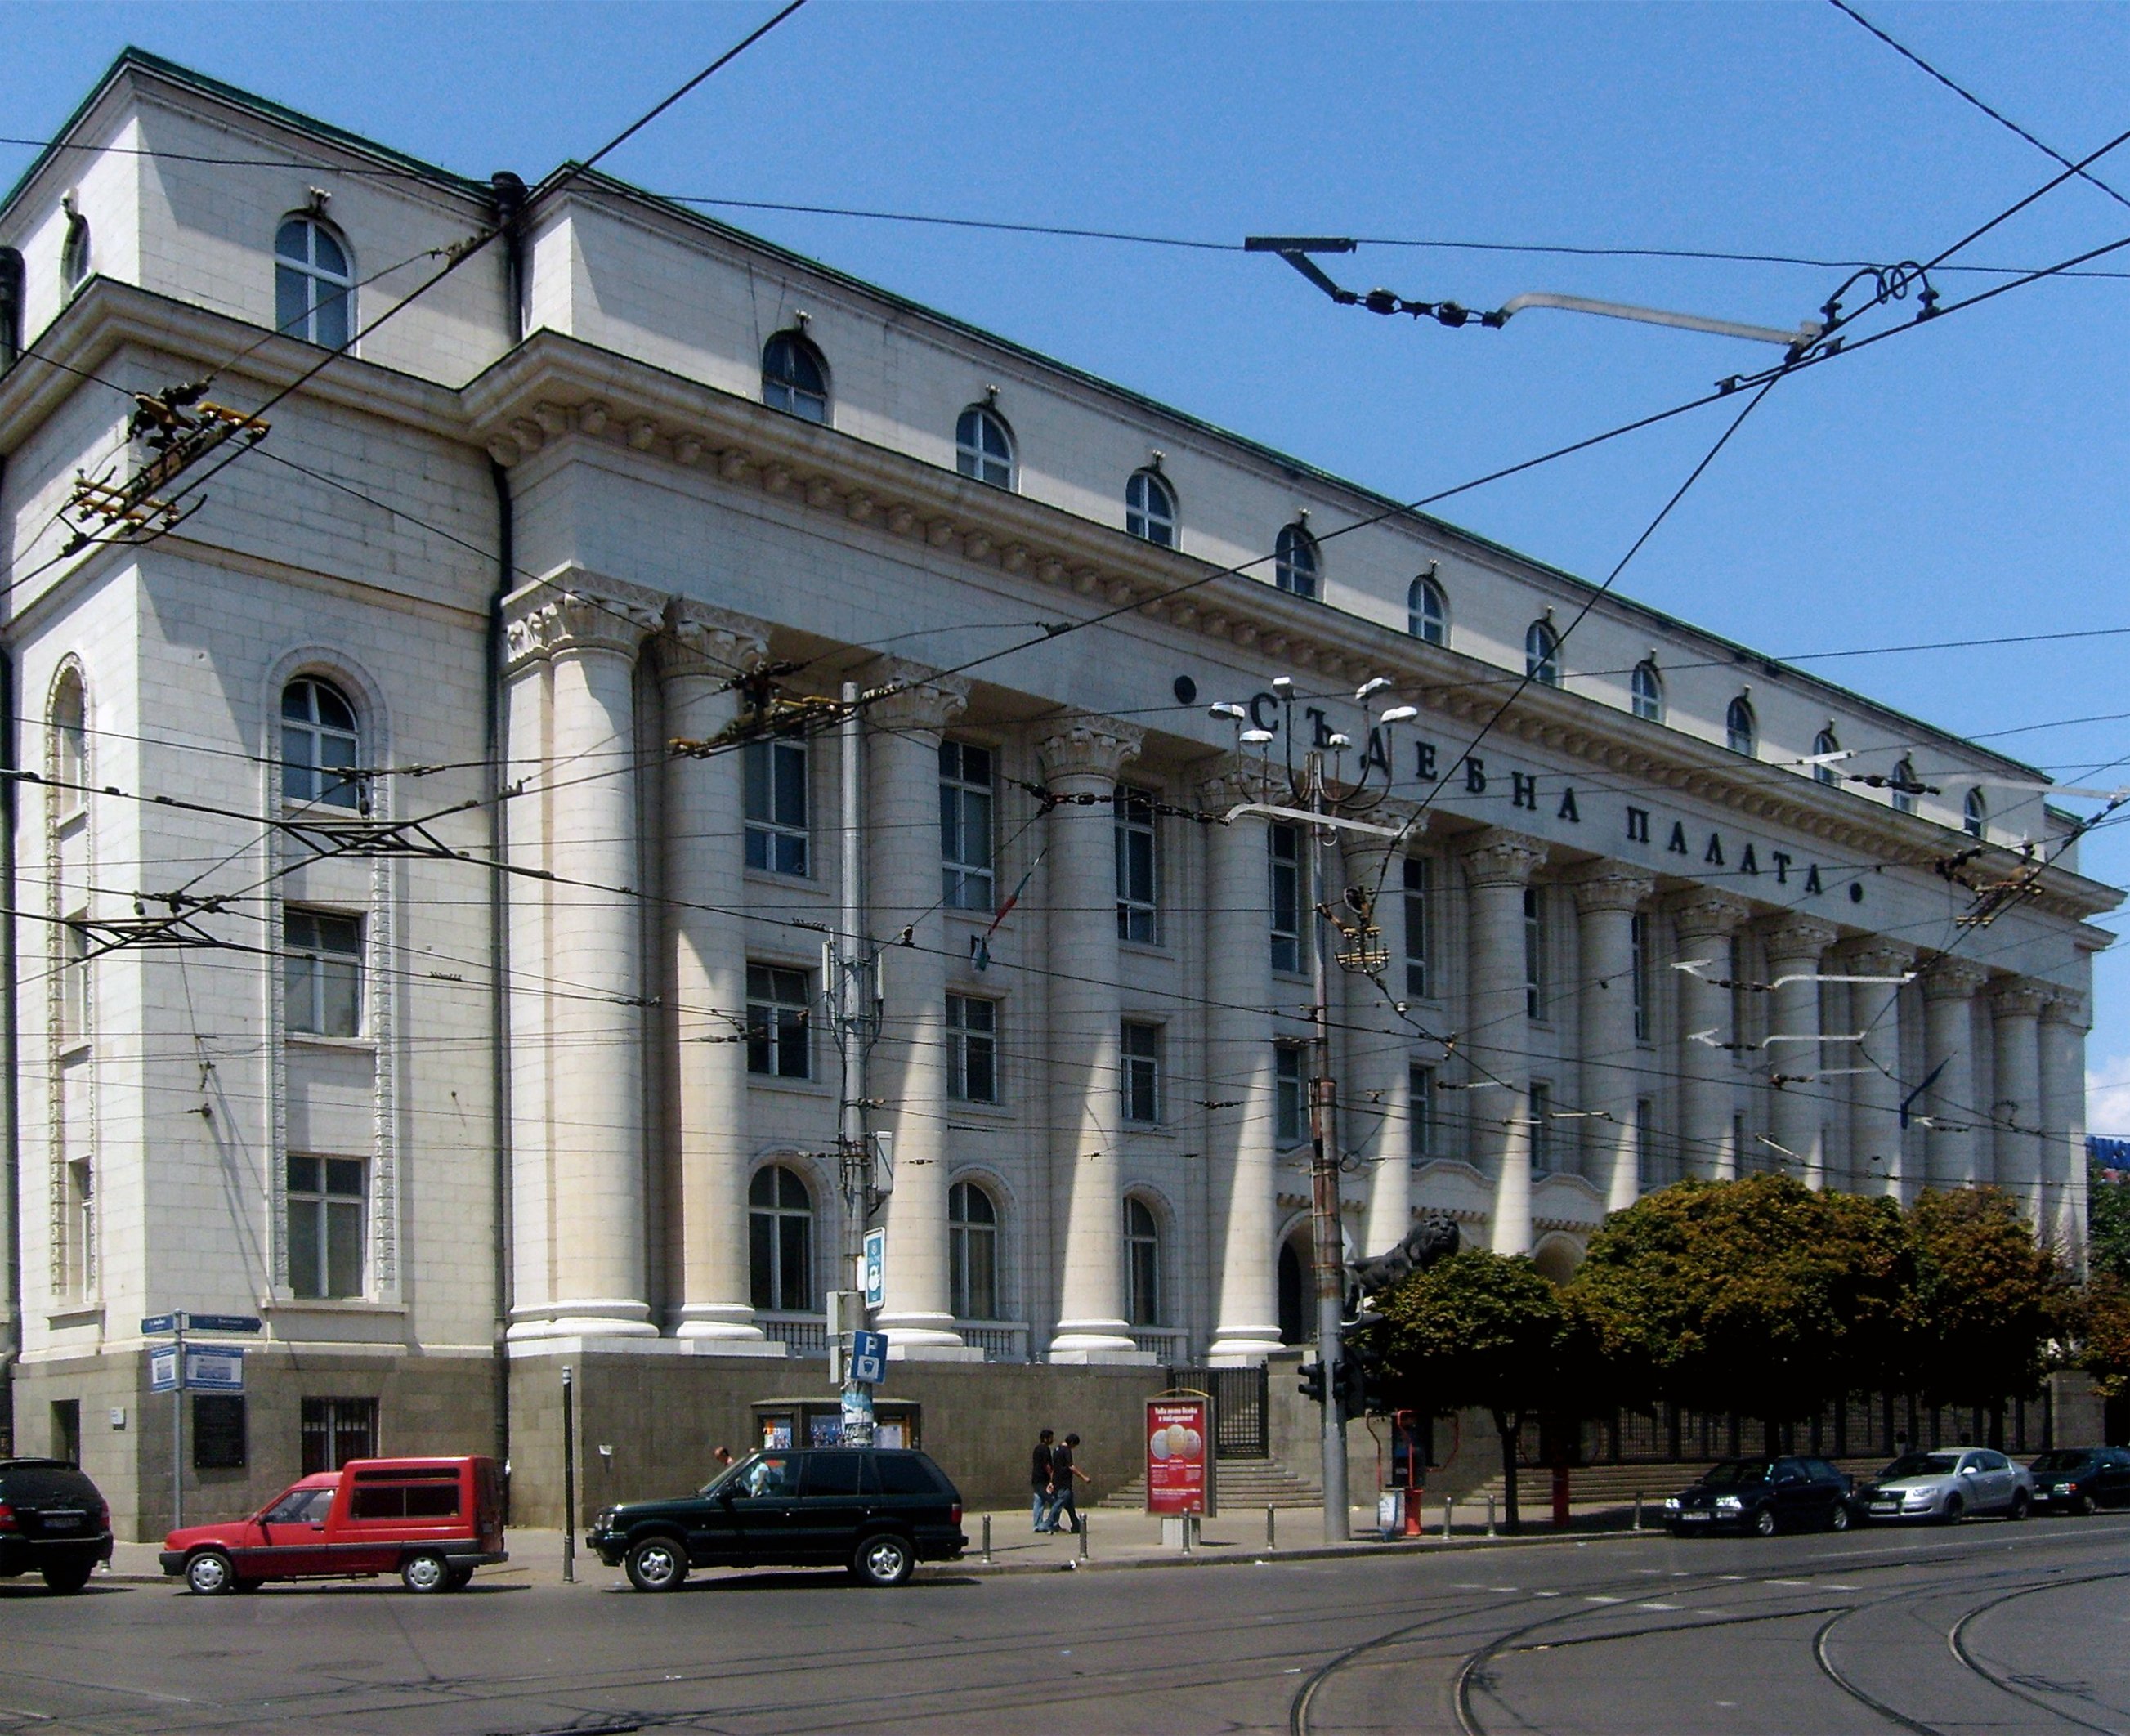 Заплашиха с бомба Съдебната палата в София